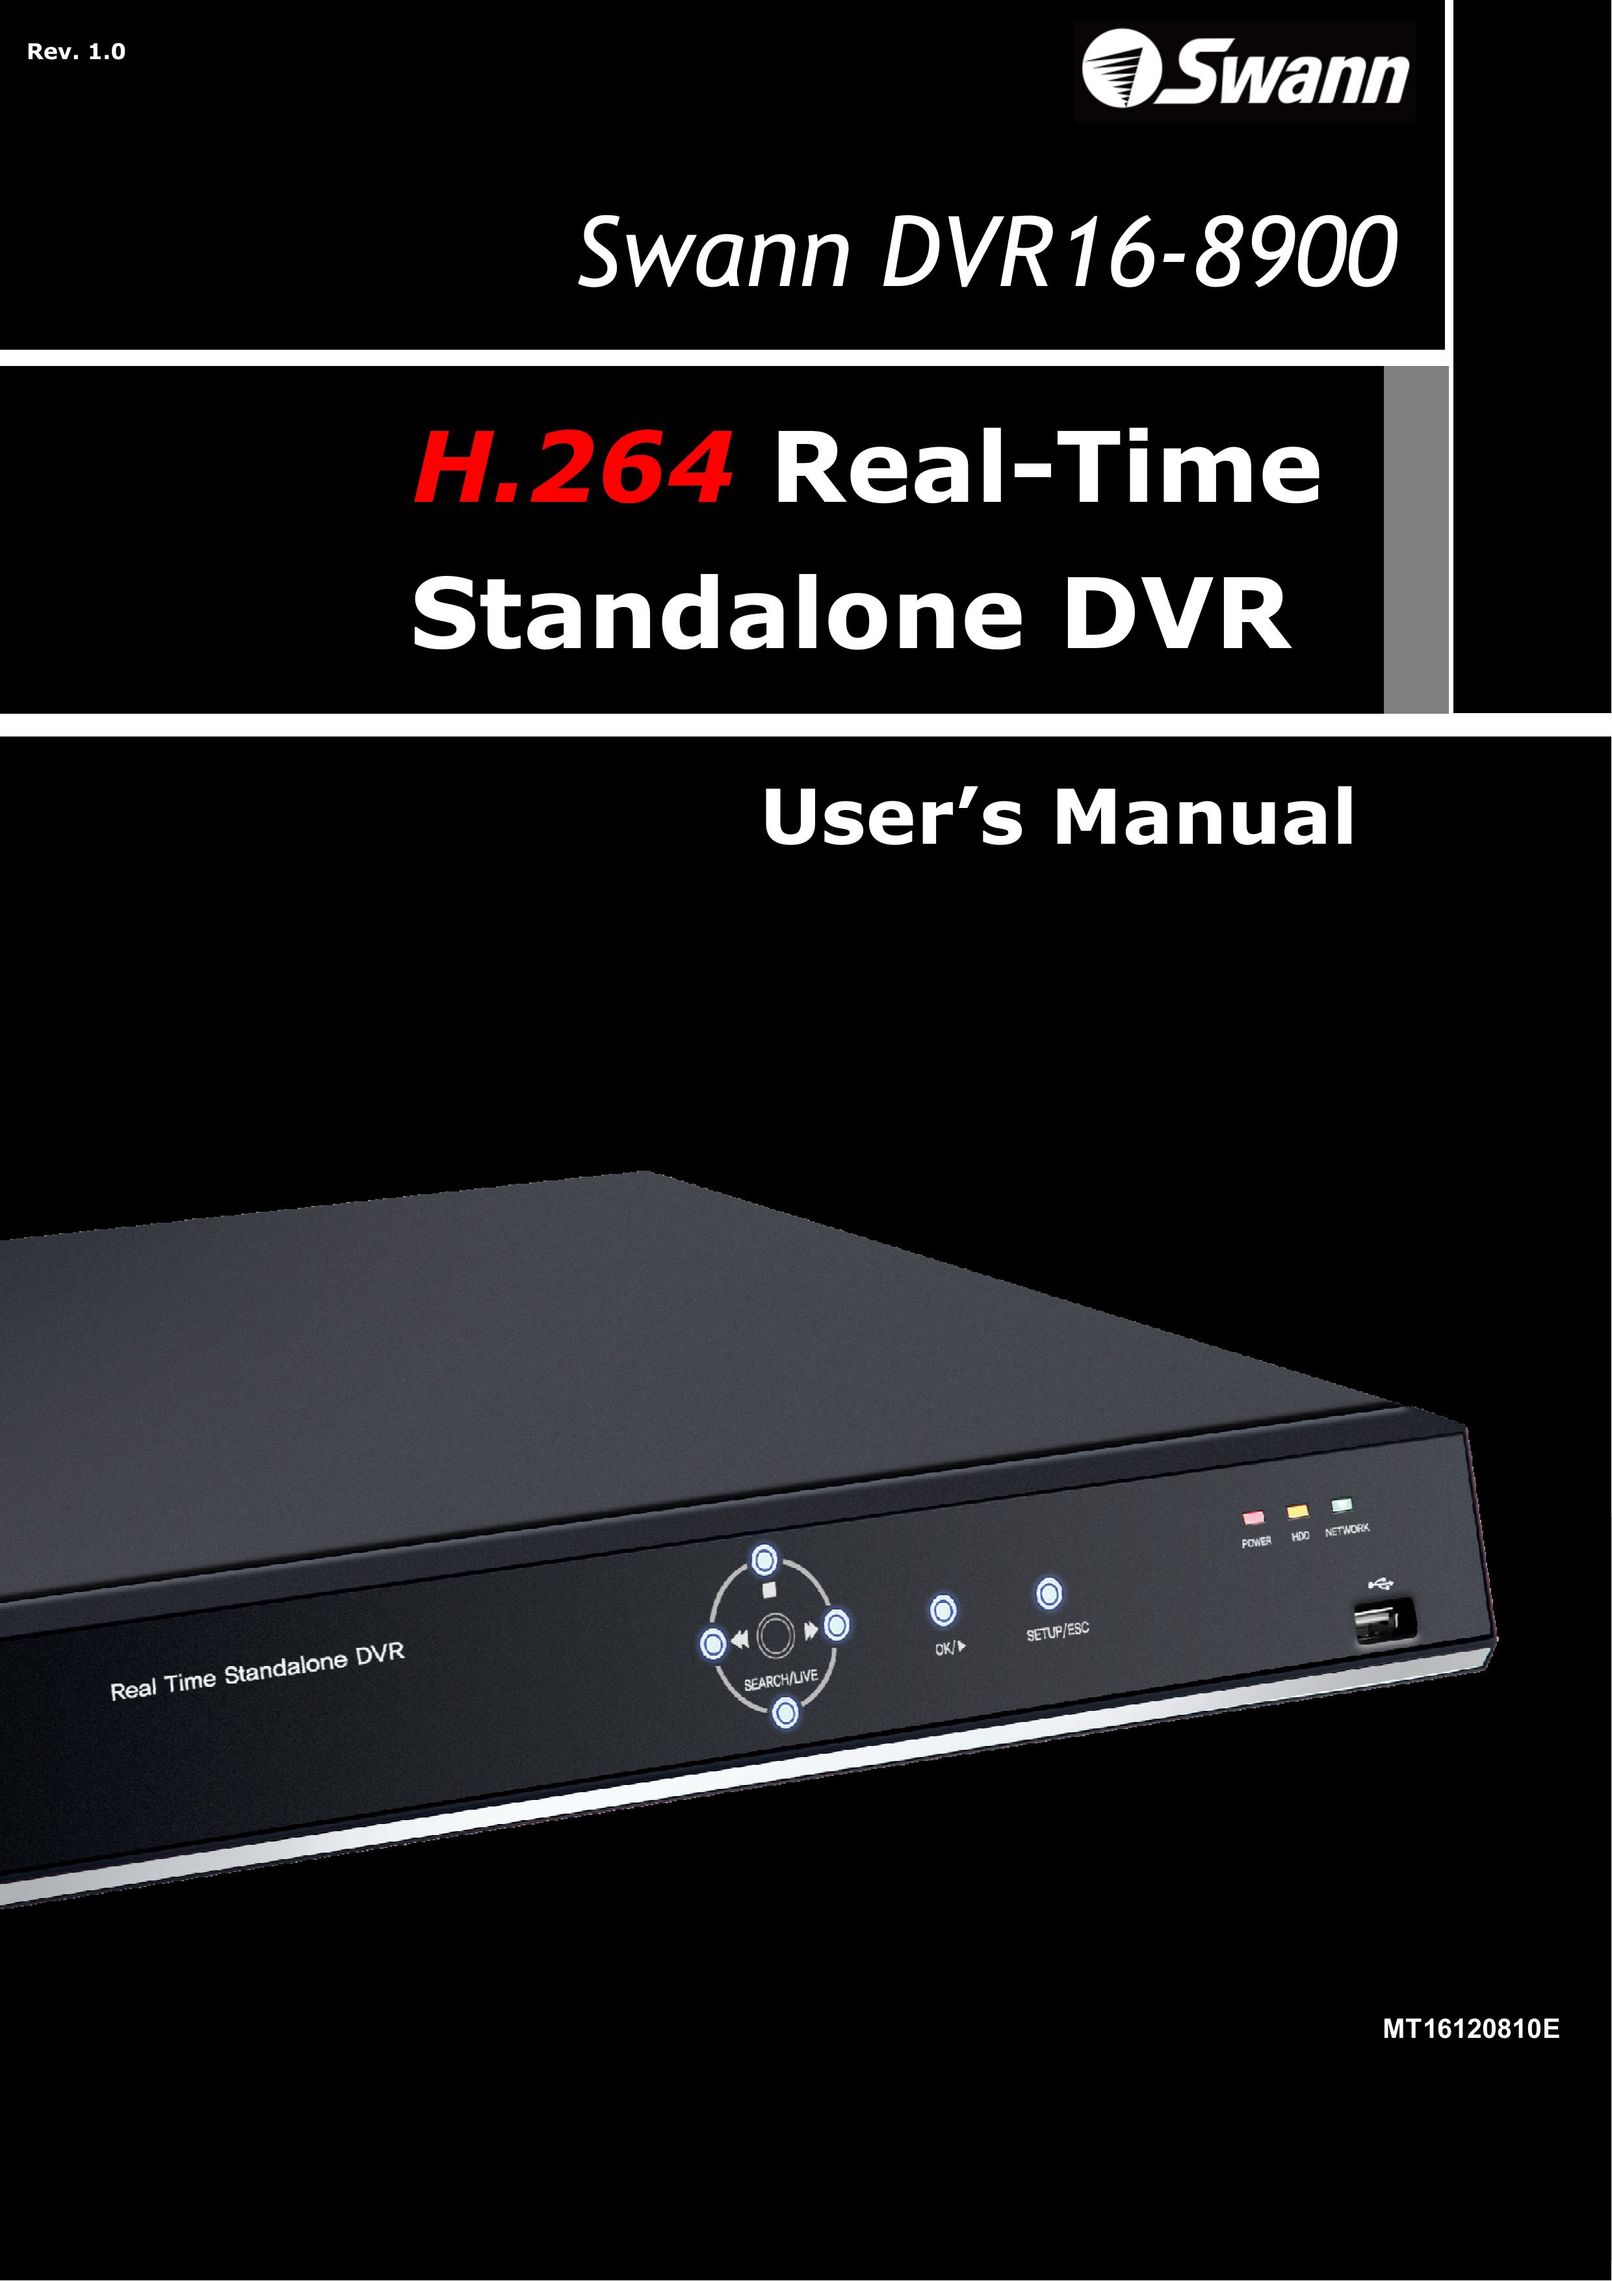 Samsung 16-8900 DVR User Manual